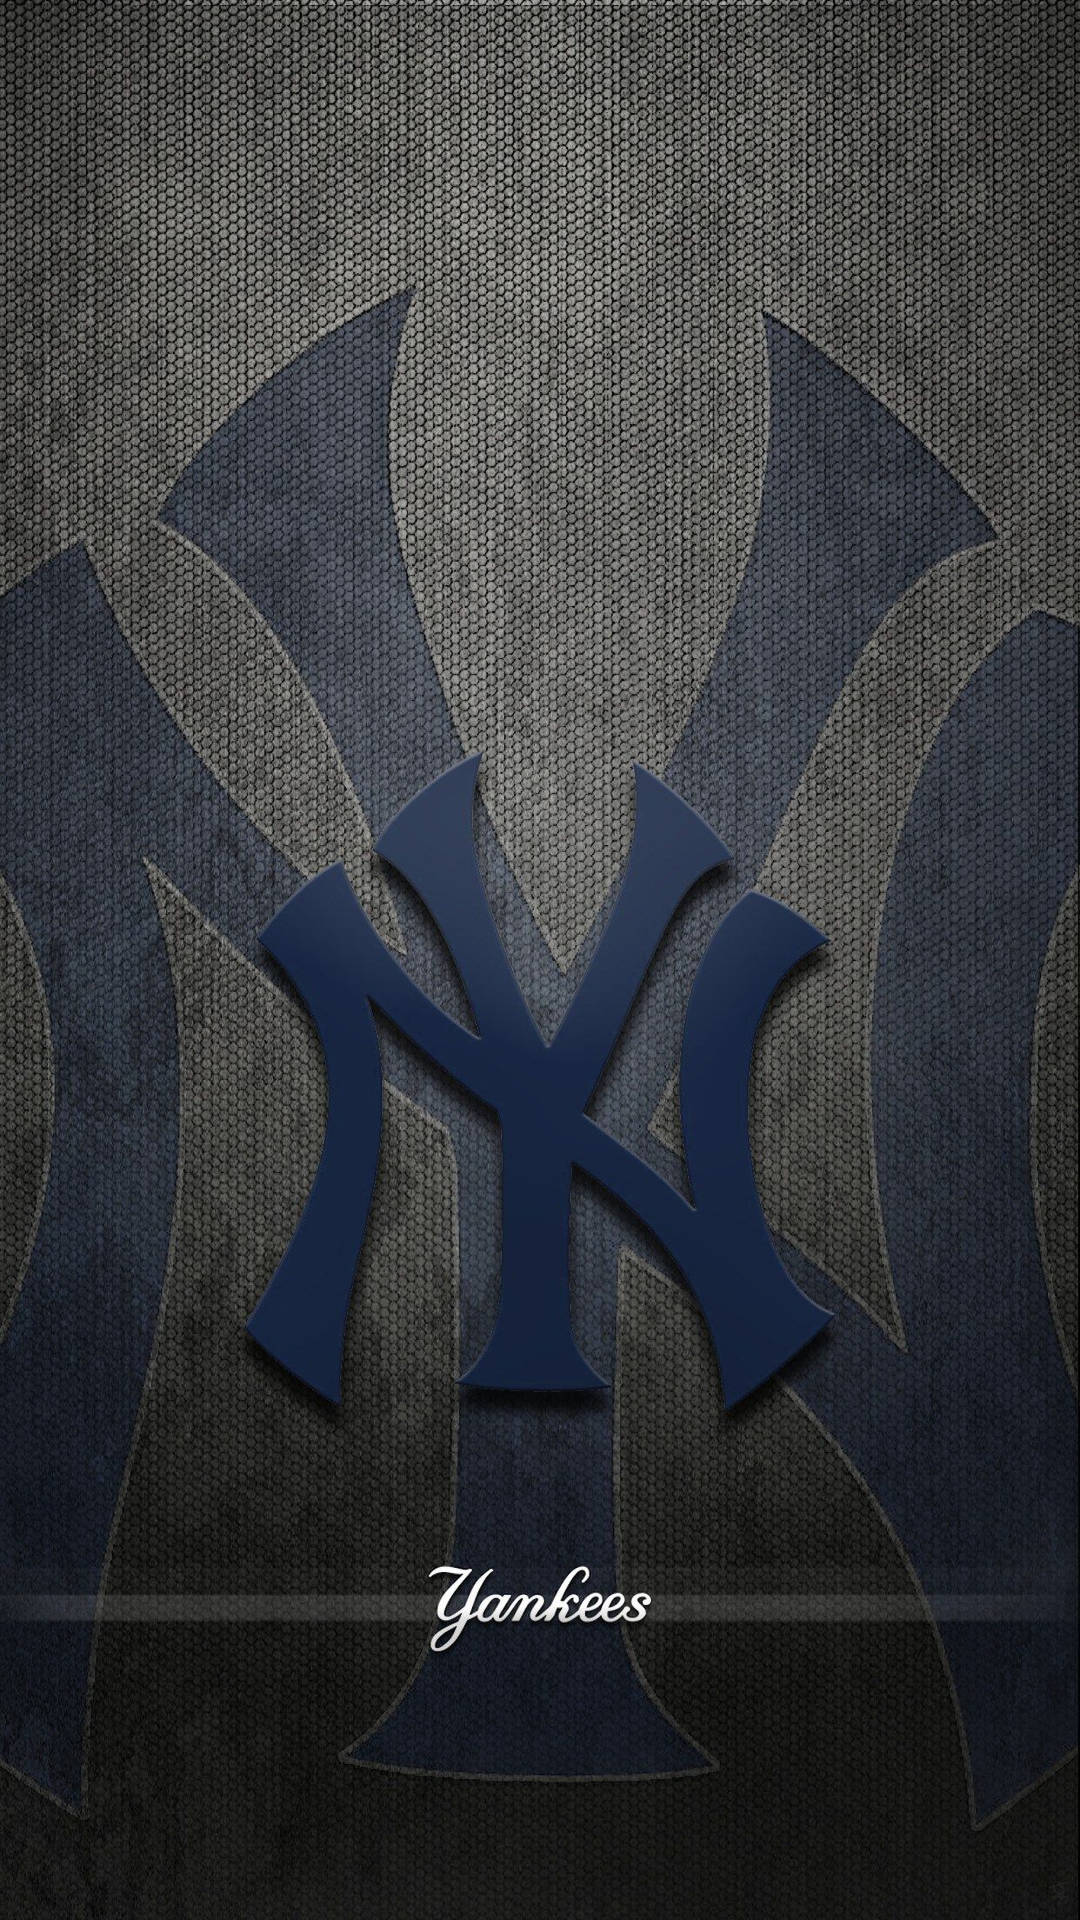 100+] New York Yankees Wallpapers